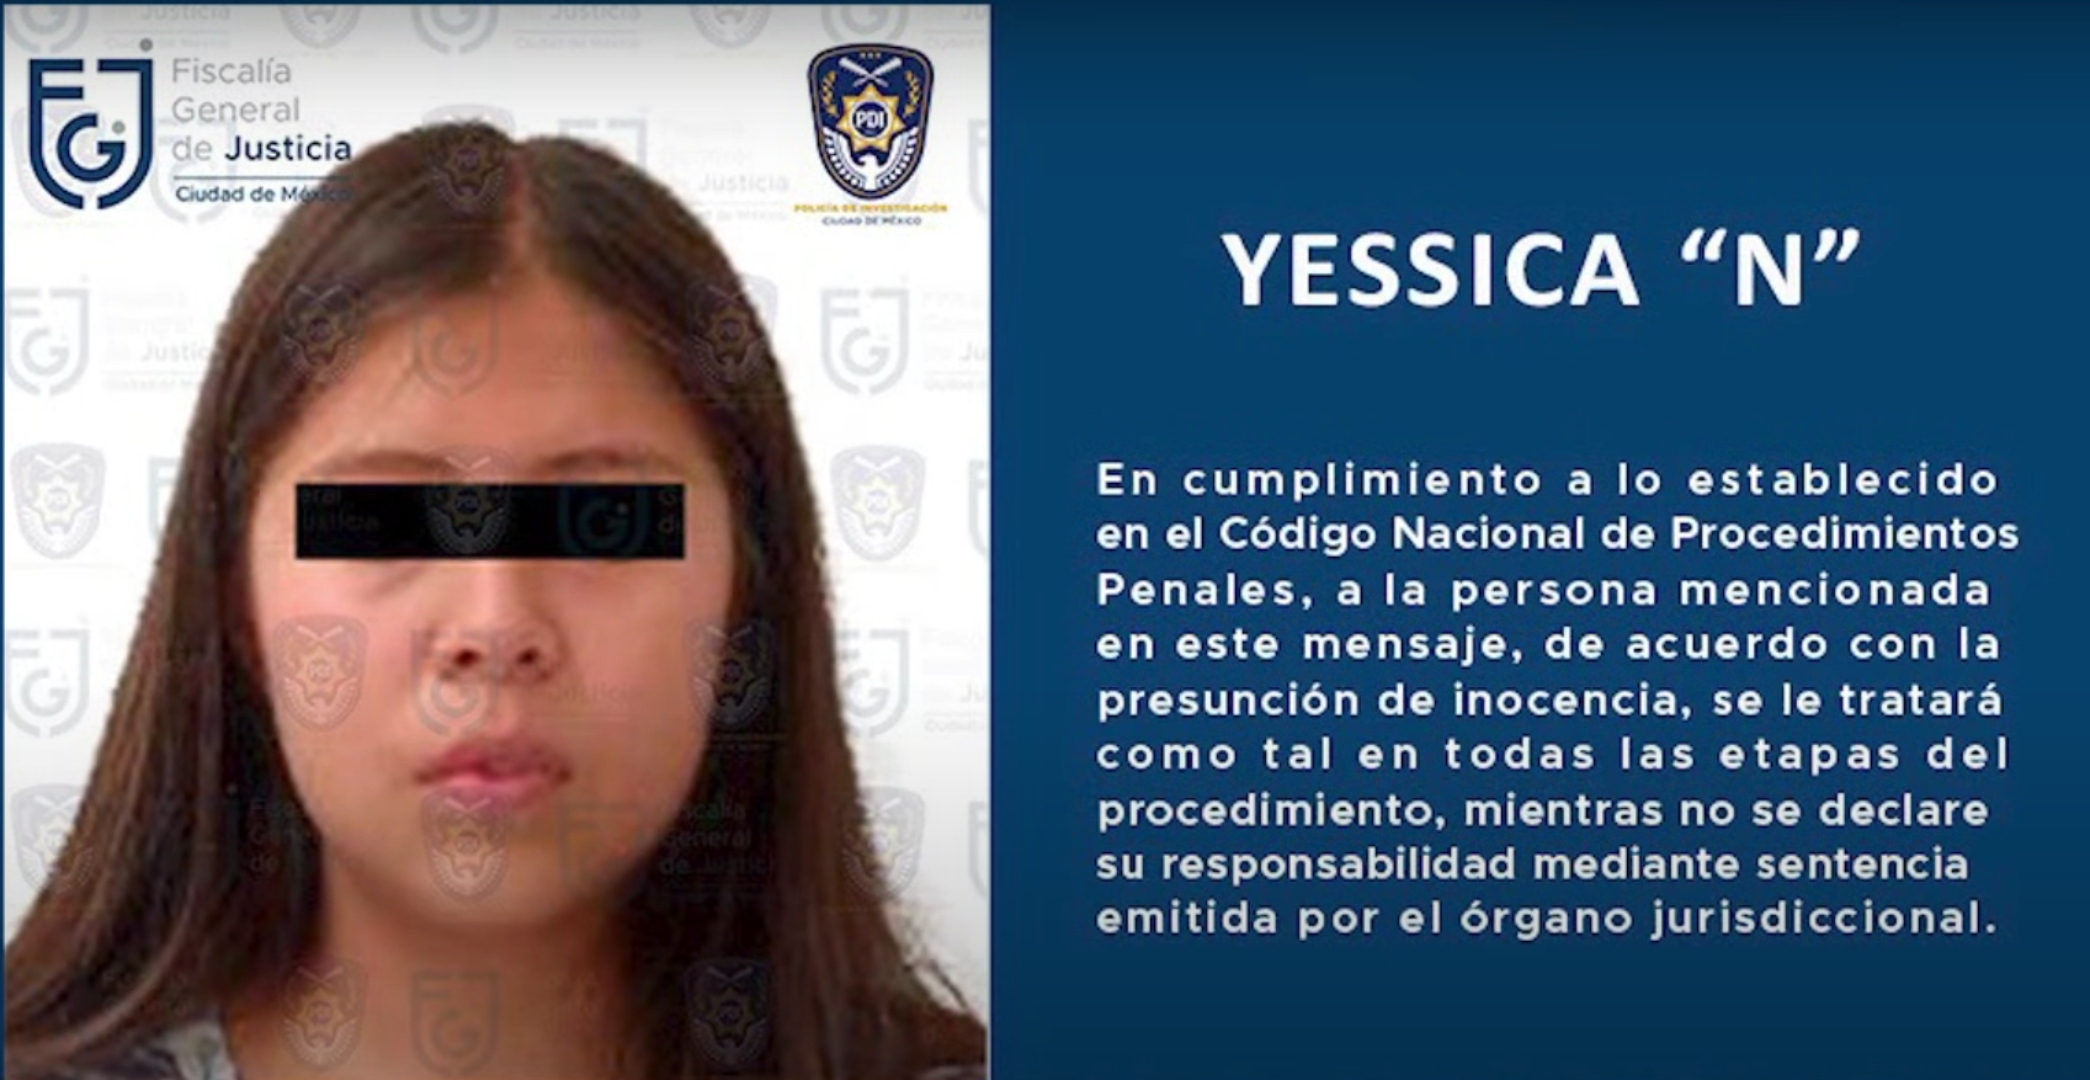 Cayó Jessica “N”, presunta responsable del feminicidio de Patxi Ximena afuera de Bachilleres 2